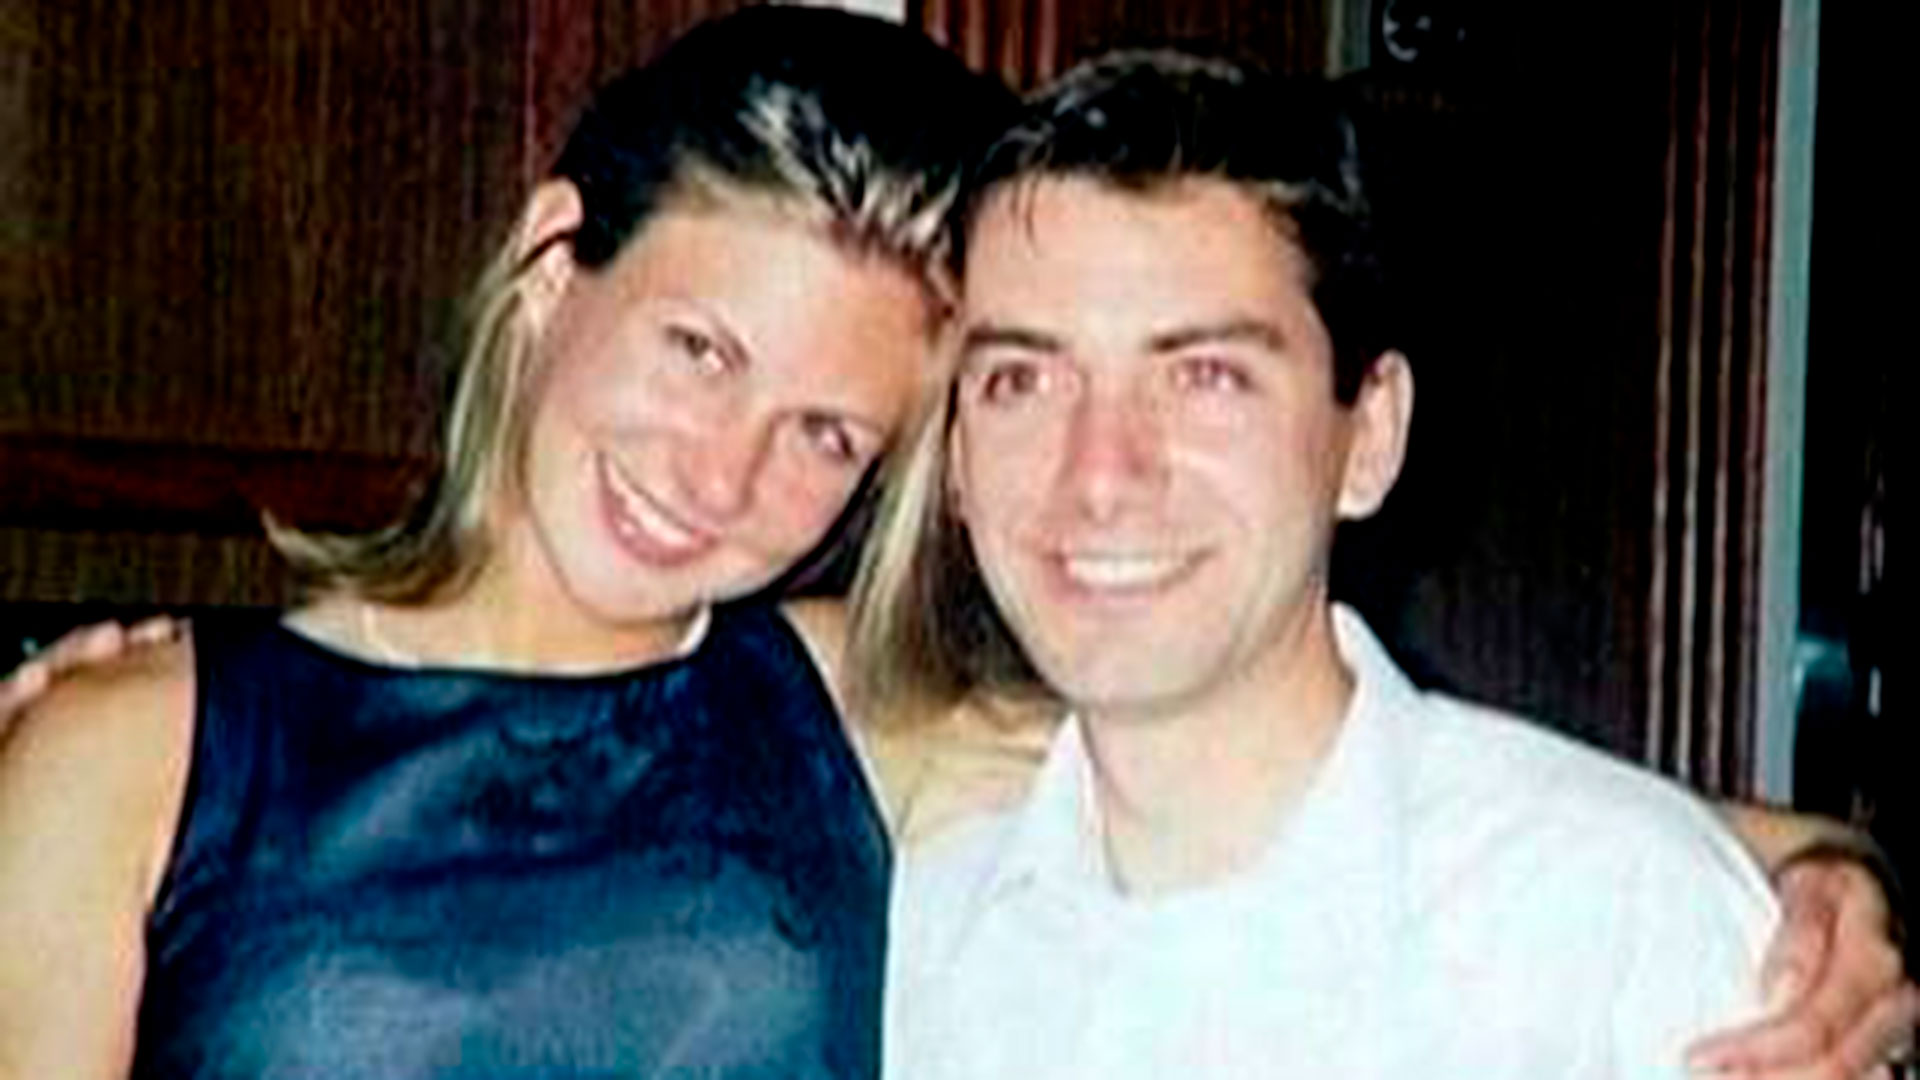 Kristin Rossum y Greg de Villers: ella se llevó del laboratorio donde trabajaba una droga letal para asesinarlo y fingir un suicidio por despecho y amor